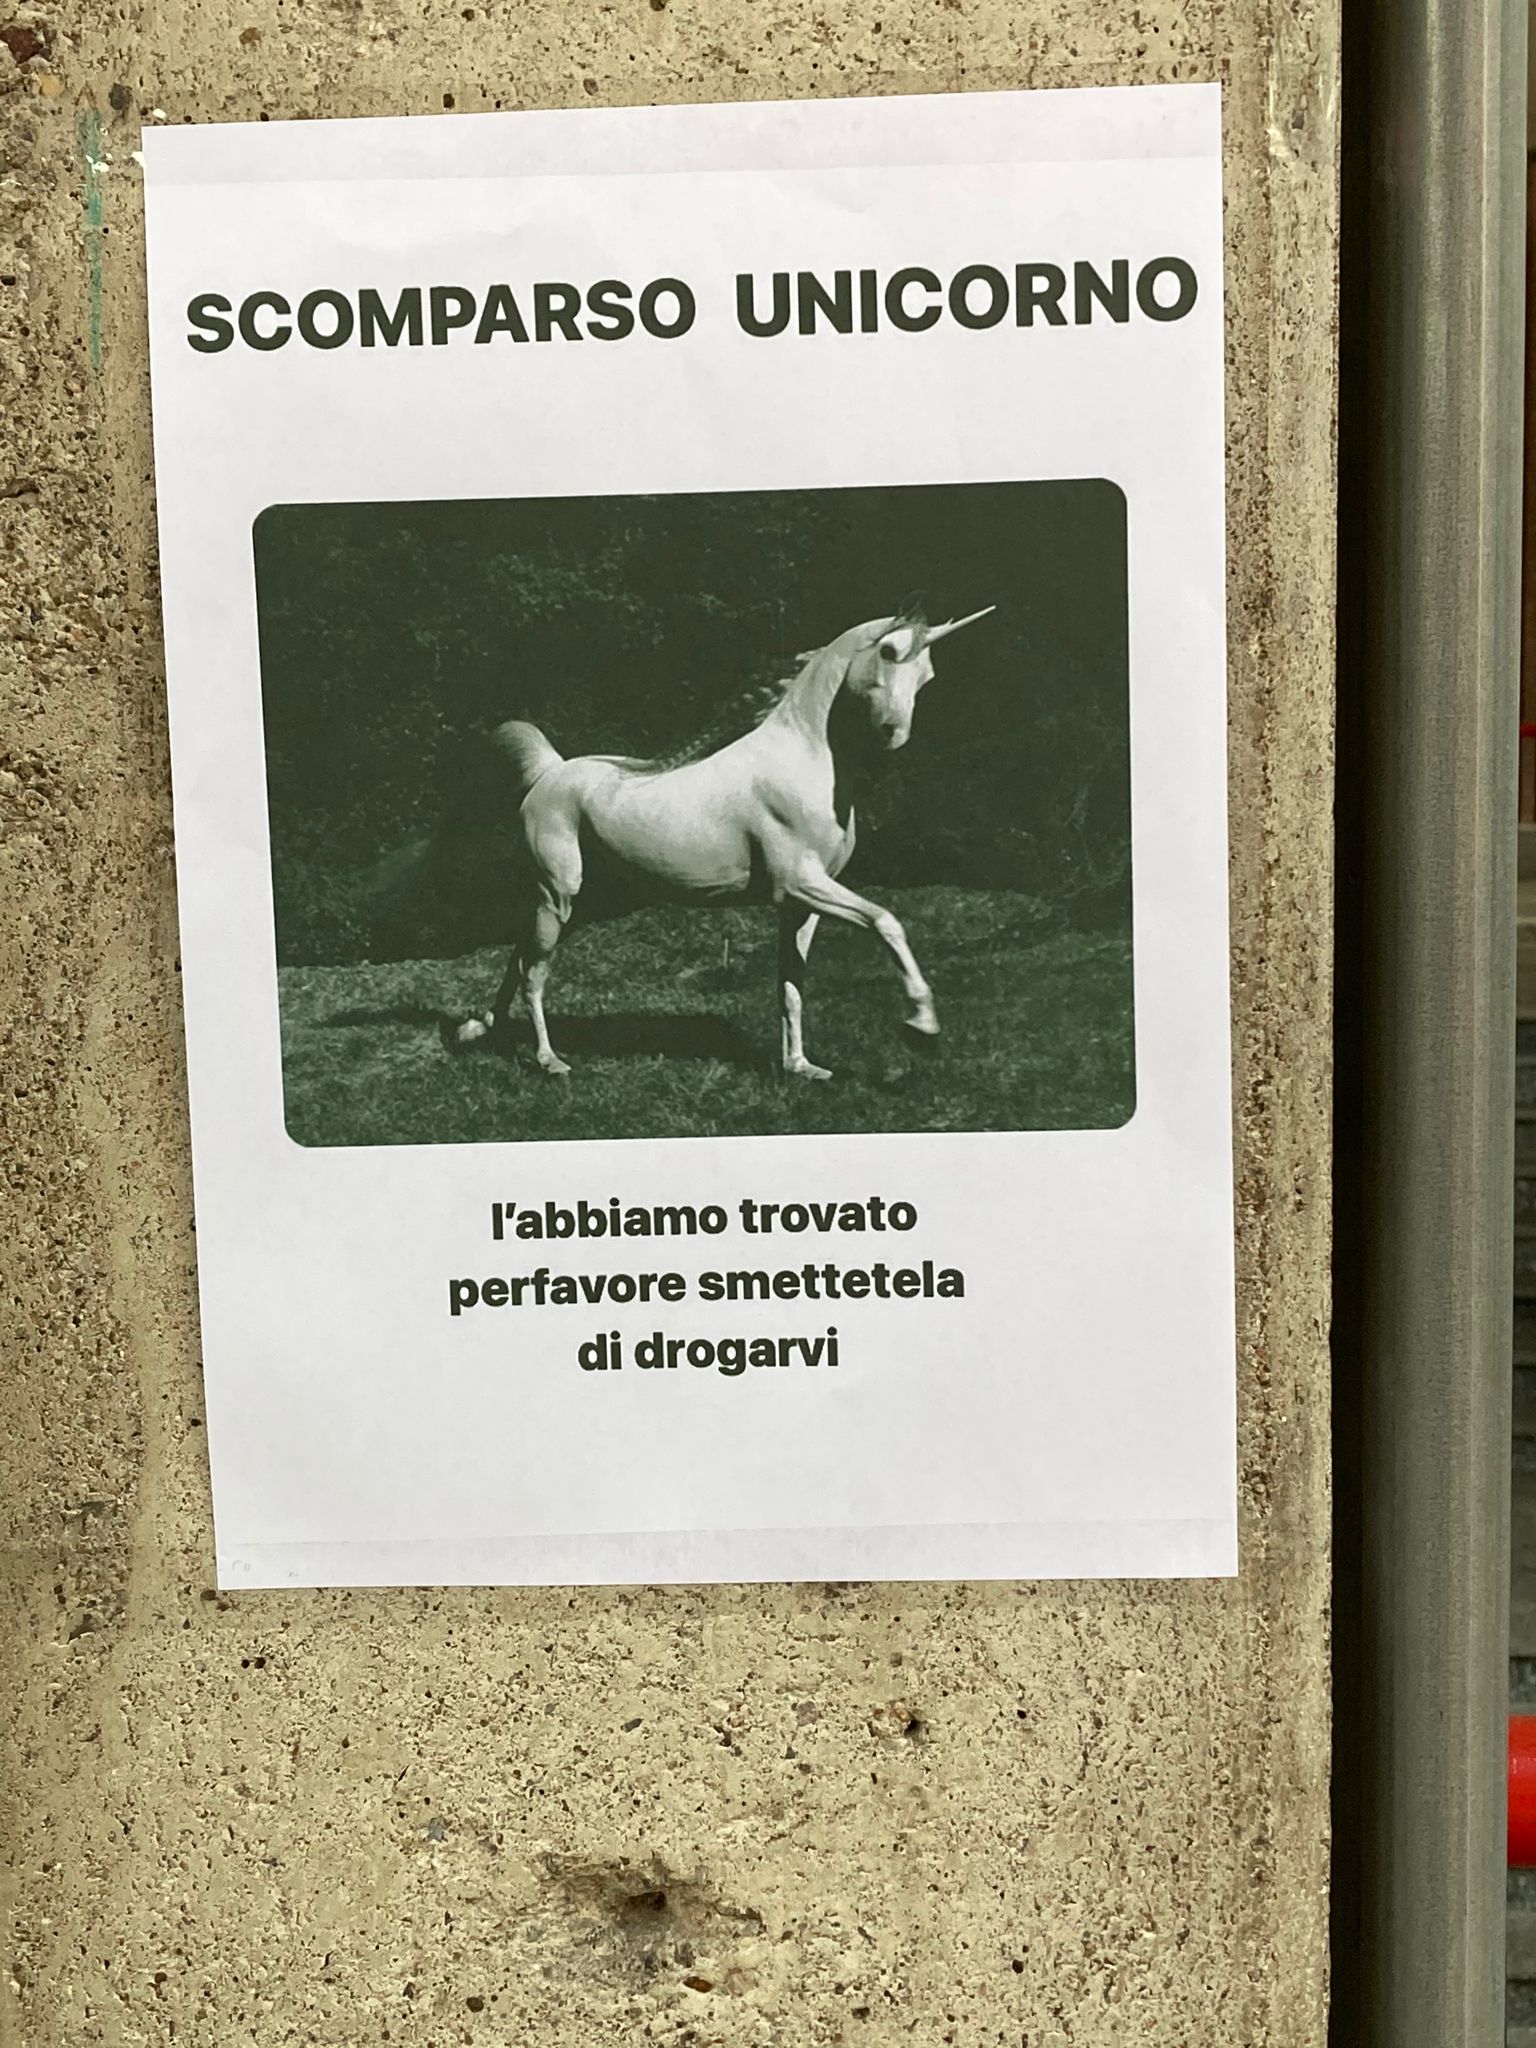 Il meme dell’unicorno… spopola sui muri della stazione di Saronno